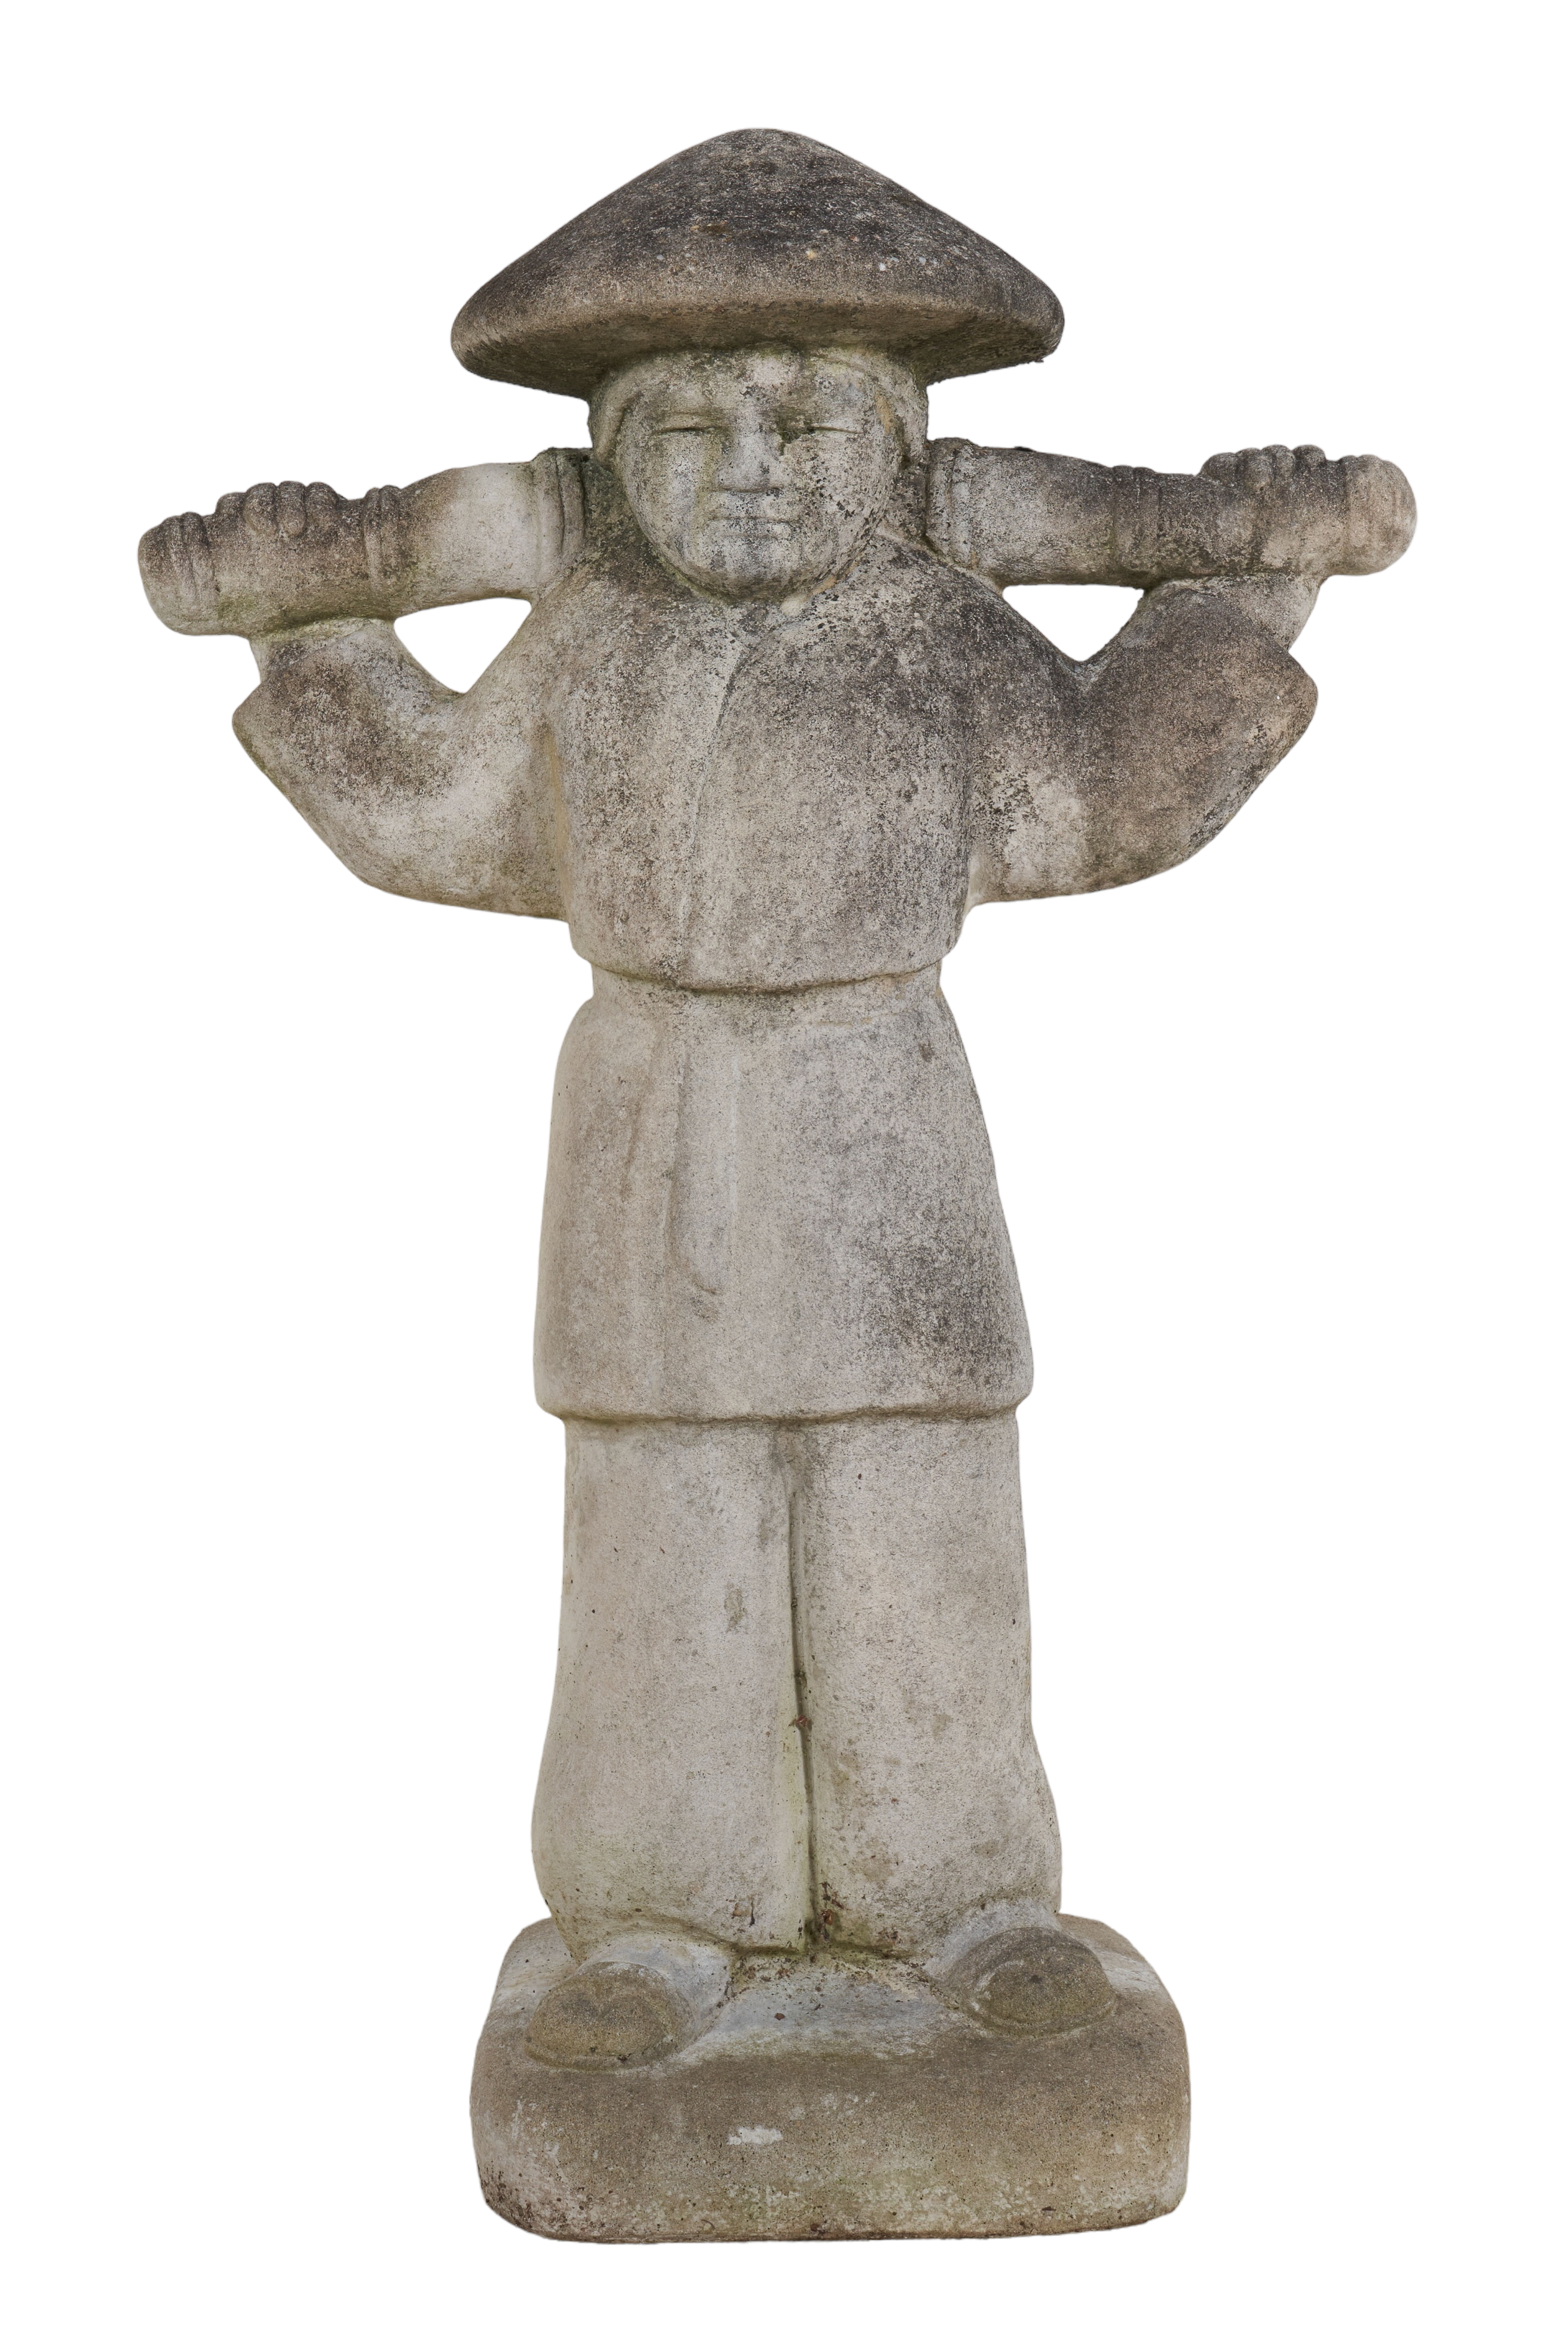 Cement statue of an Asian figure  2e2191